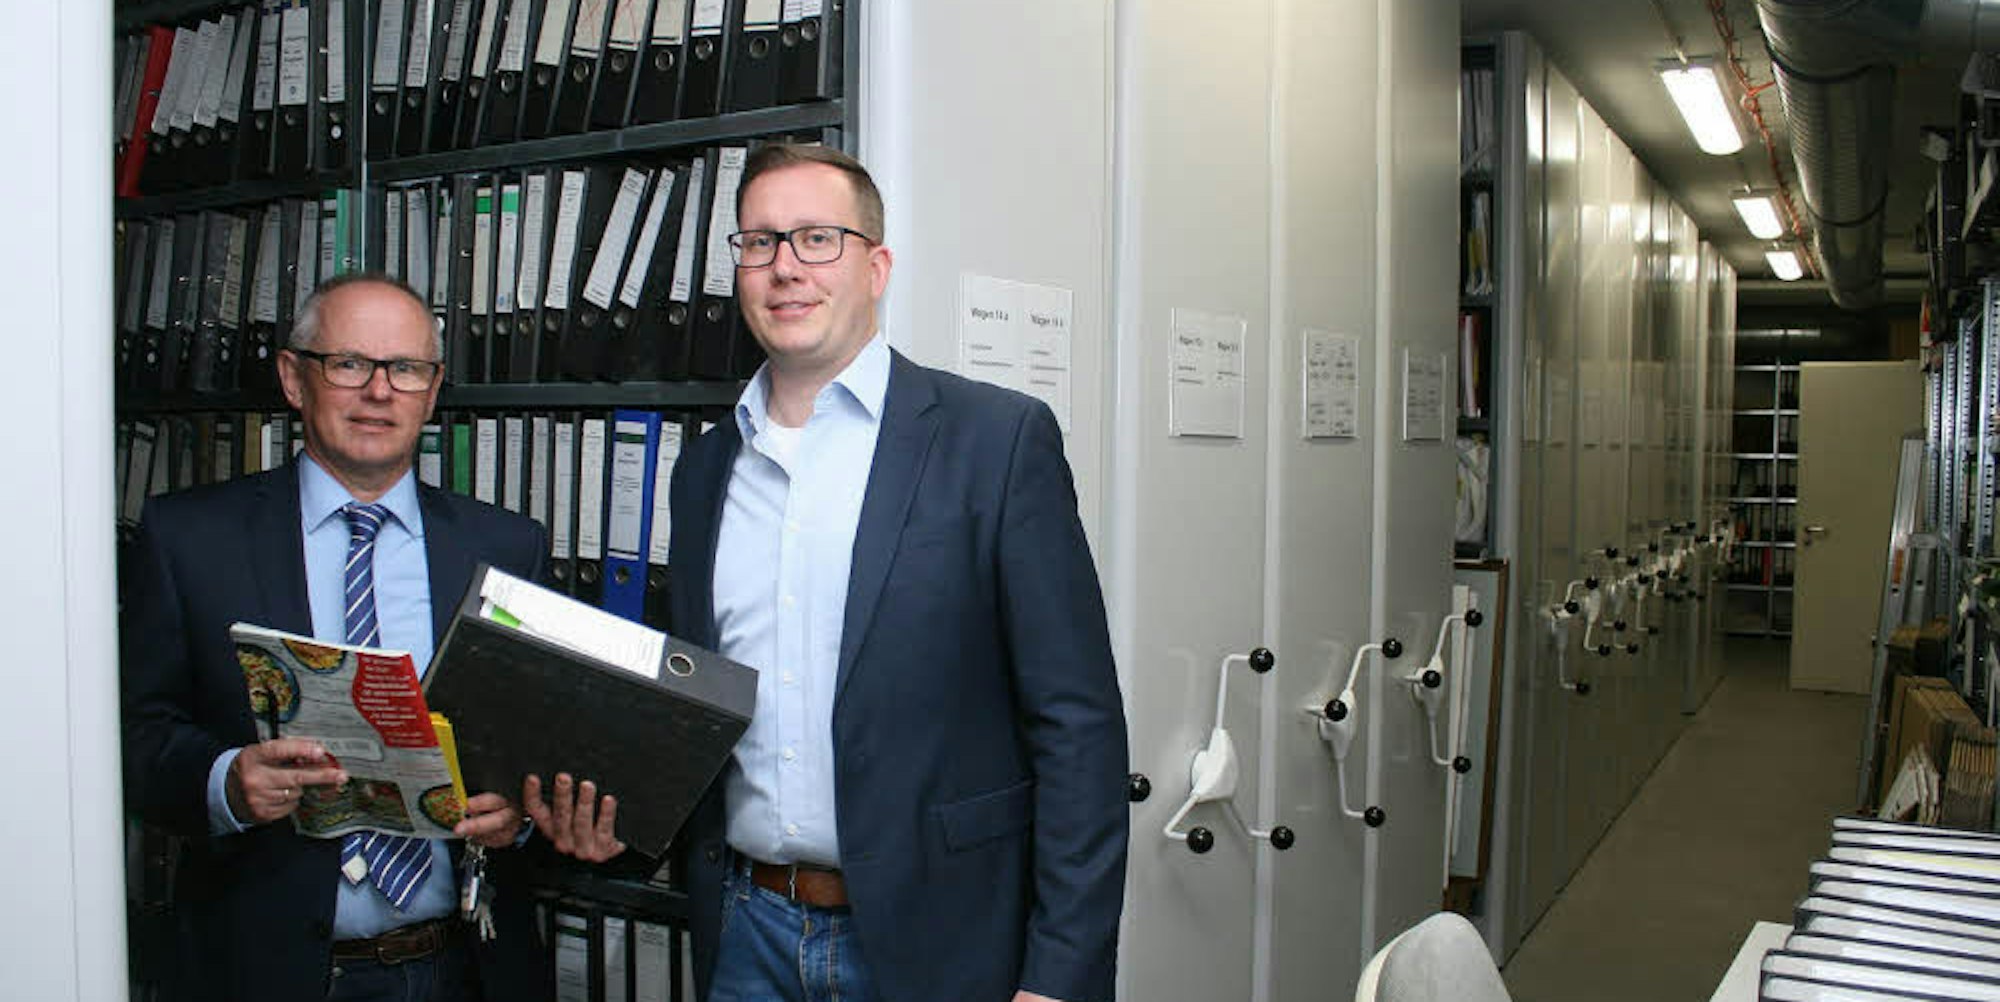 Das Gedächtnis der Stadt zeigten Ralf Claßen (l.) und Dennis Müller bei der Führung im Rathaus-Archiv.